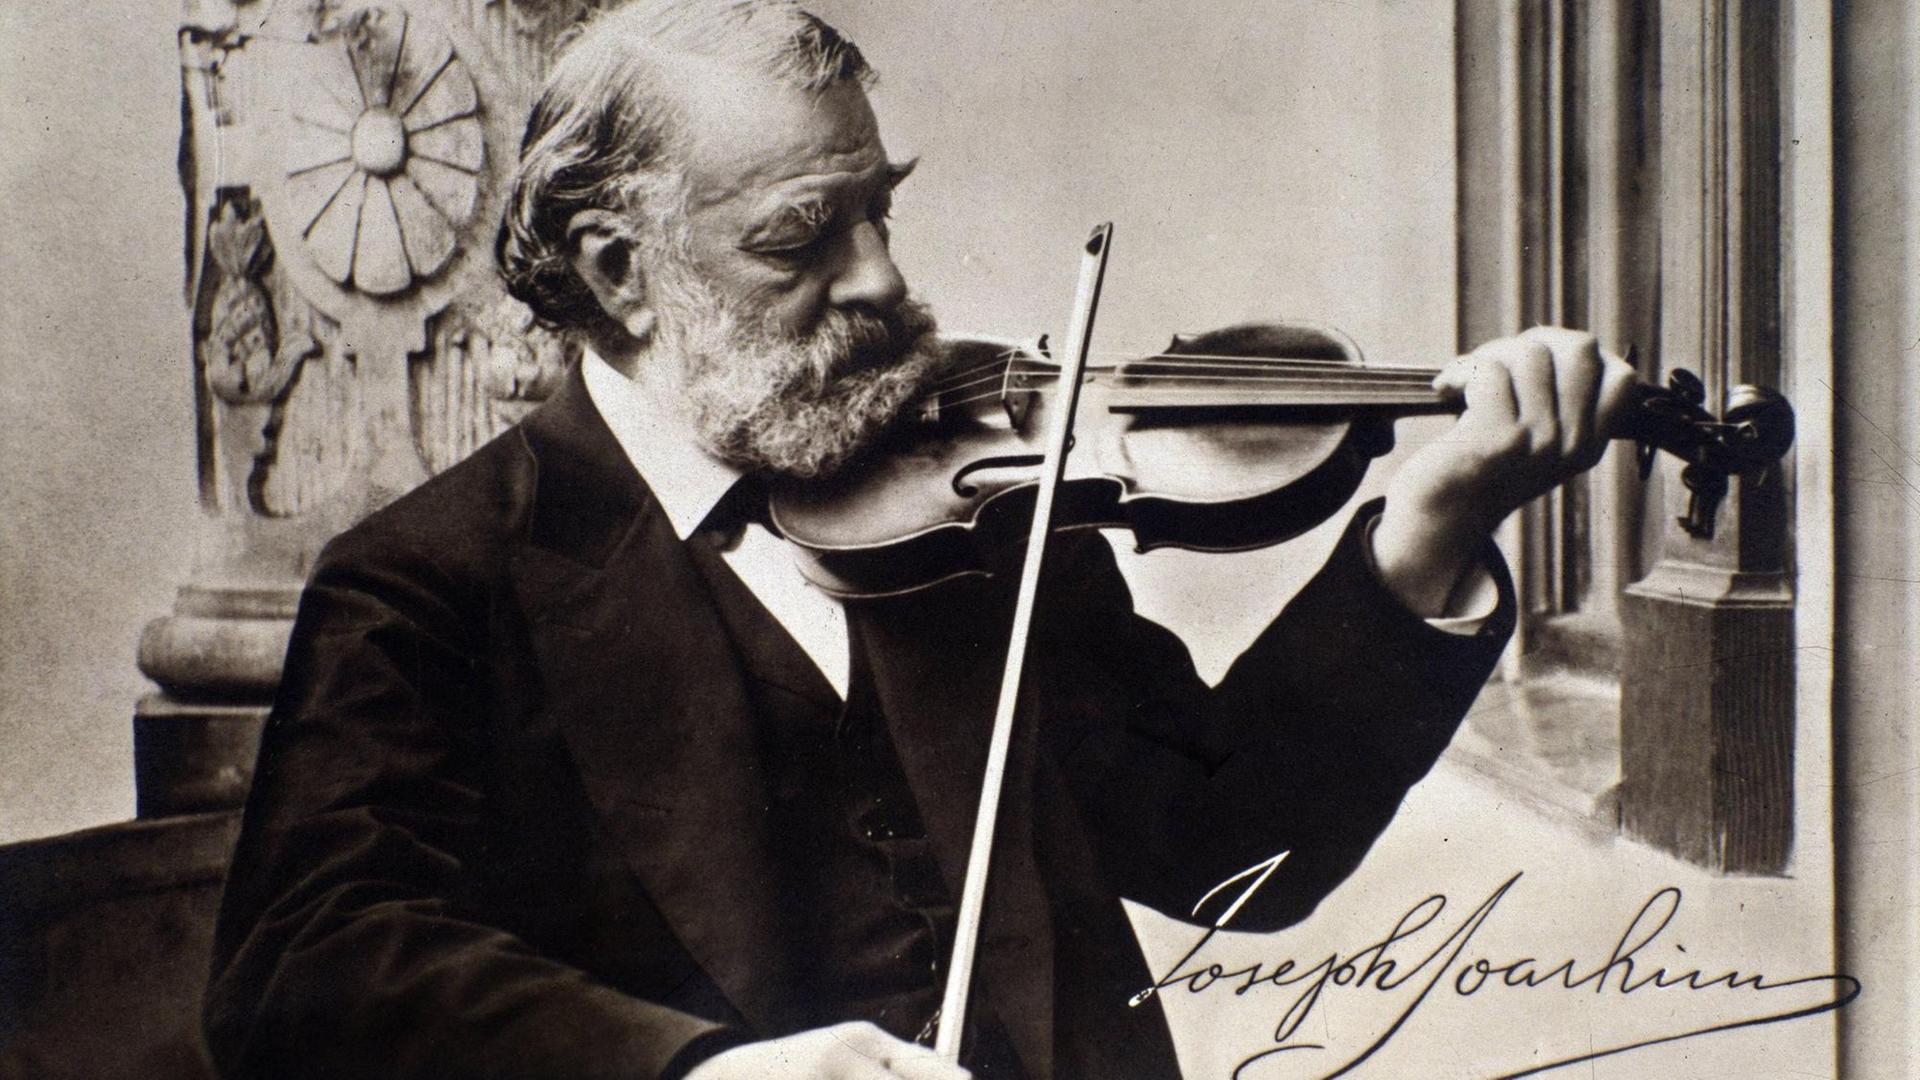 Schwarz-weiß Foto, aufgenommen um 1900, mit dem spielenden Geiger Joseph Joachim, er trägt einen scharzen Anzug und schaut auf das Griffbrett, er trägt einen weißen Vollbart und hat weiße Haare, unten rechts ist seine Unterschrift verzeichnet